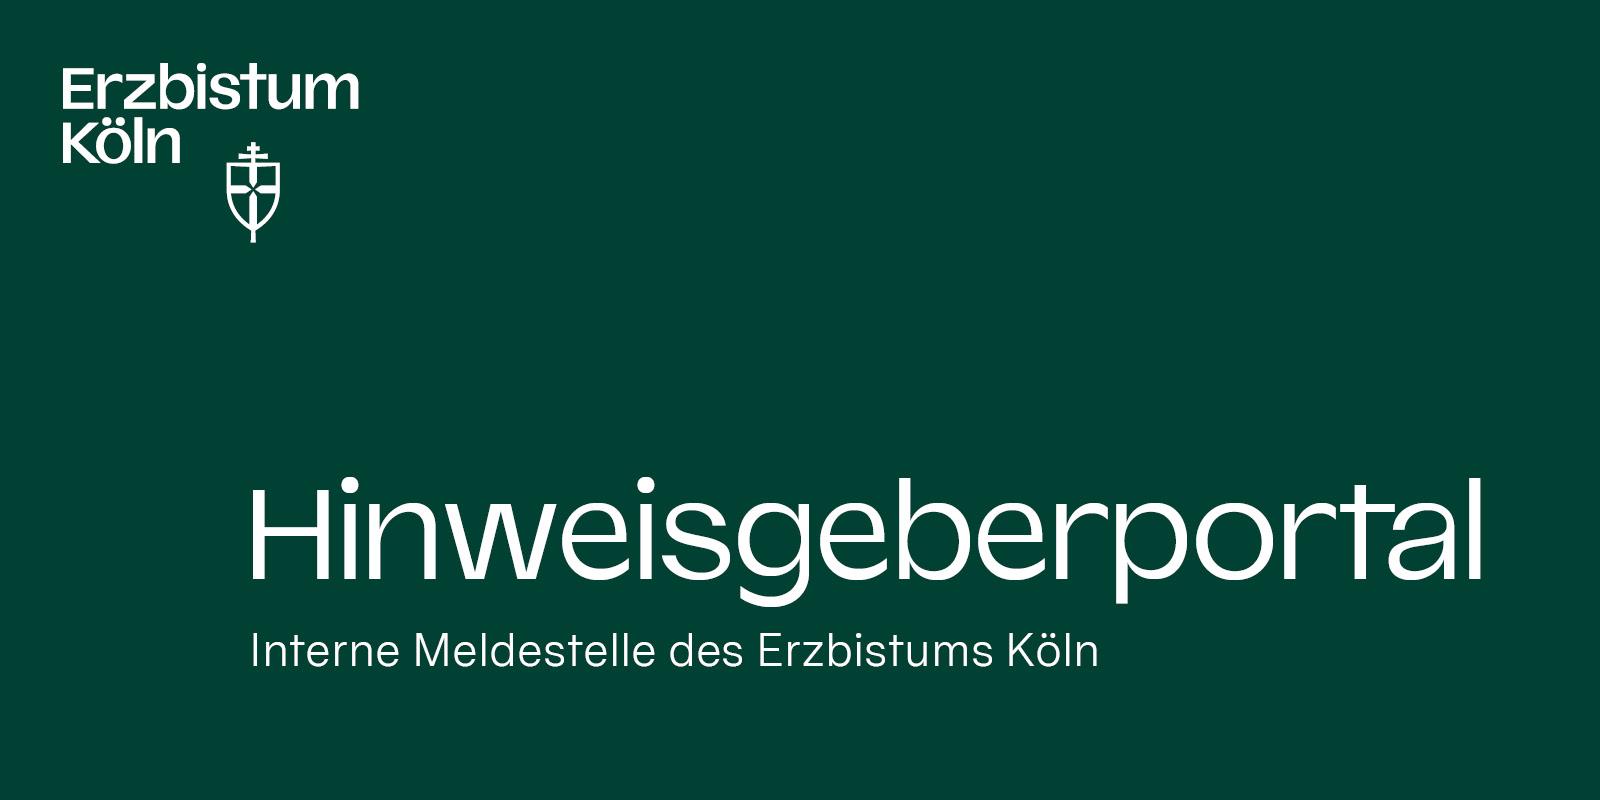 Hinweisgeberportal – Interne Meldestelle im Erzbistum Köln